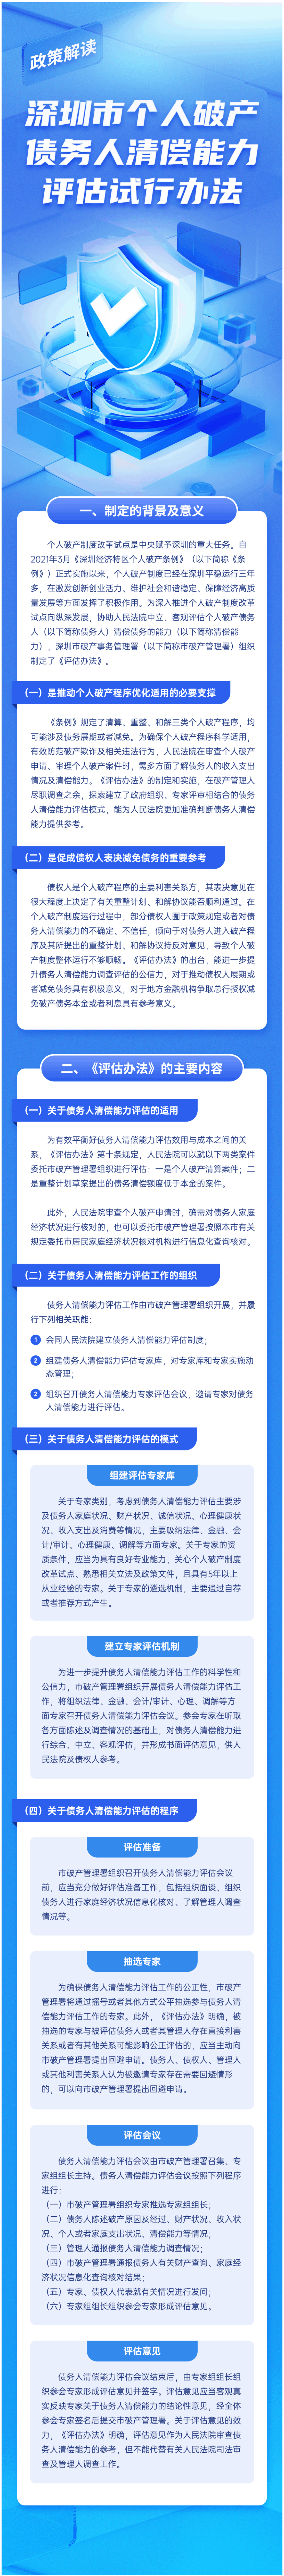 【解读】一图读懂《深圳市个人破产债务人清偿能力评估试行办法》政策解读-1